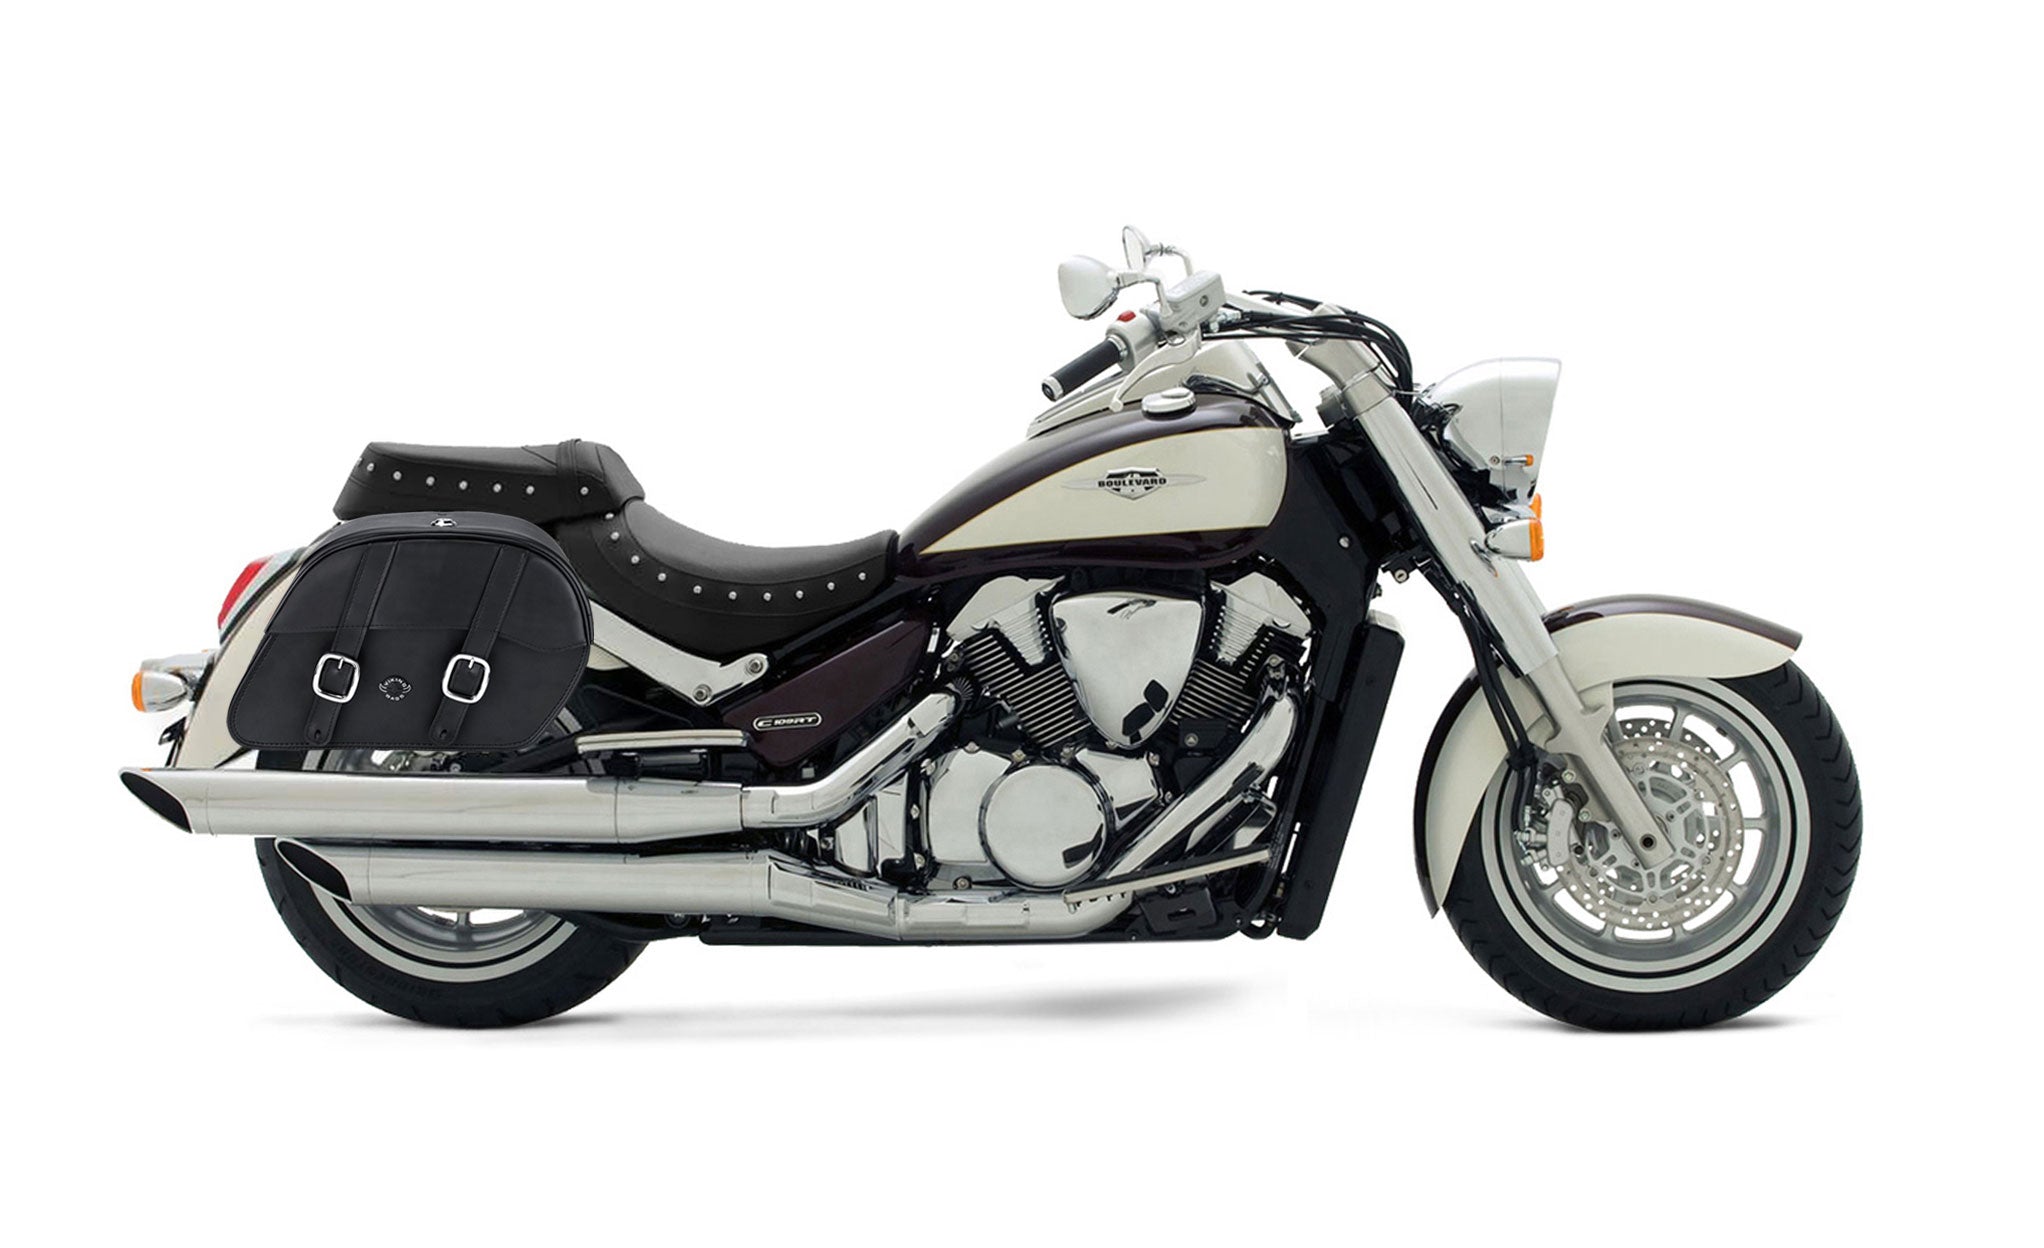 Viking Skarner Large Suzuki Boulevard C109 Leather Motorcycle Saddlebags on Bike Photo @expand